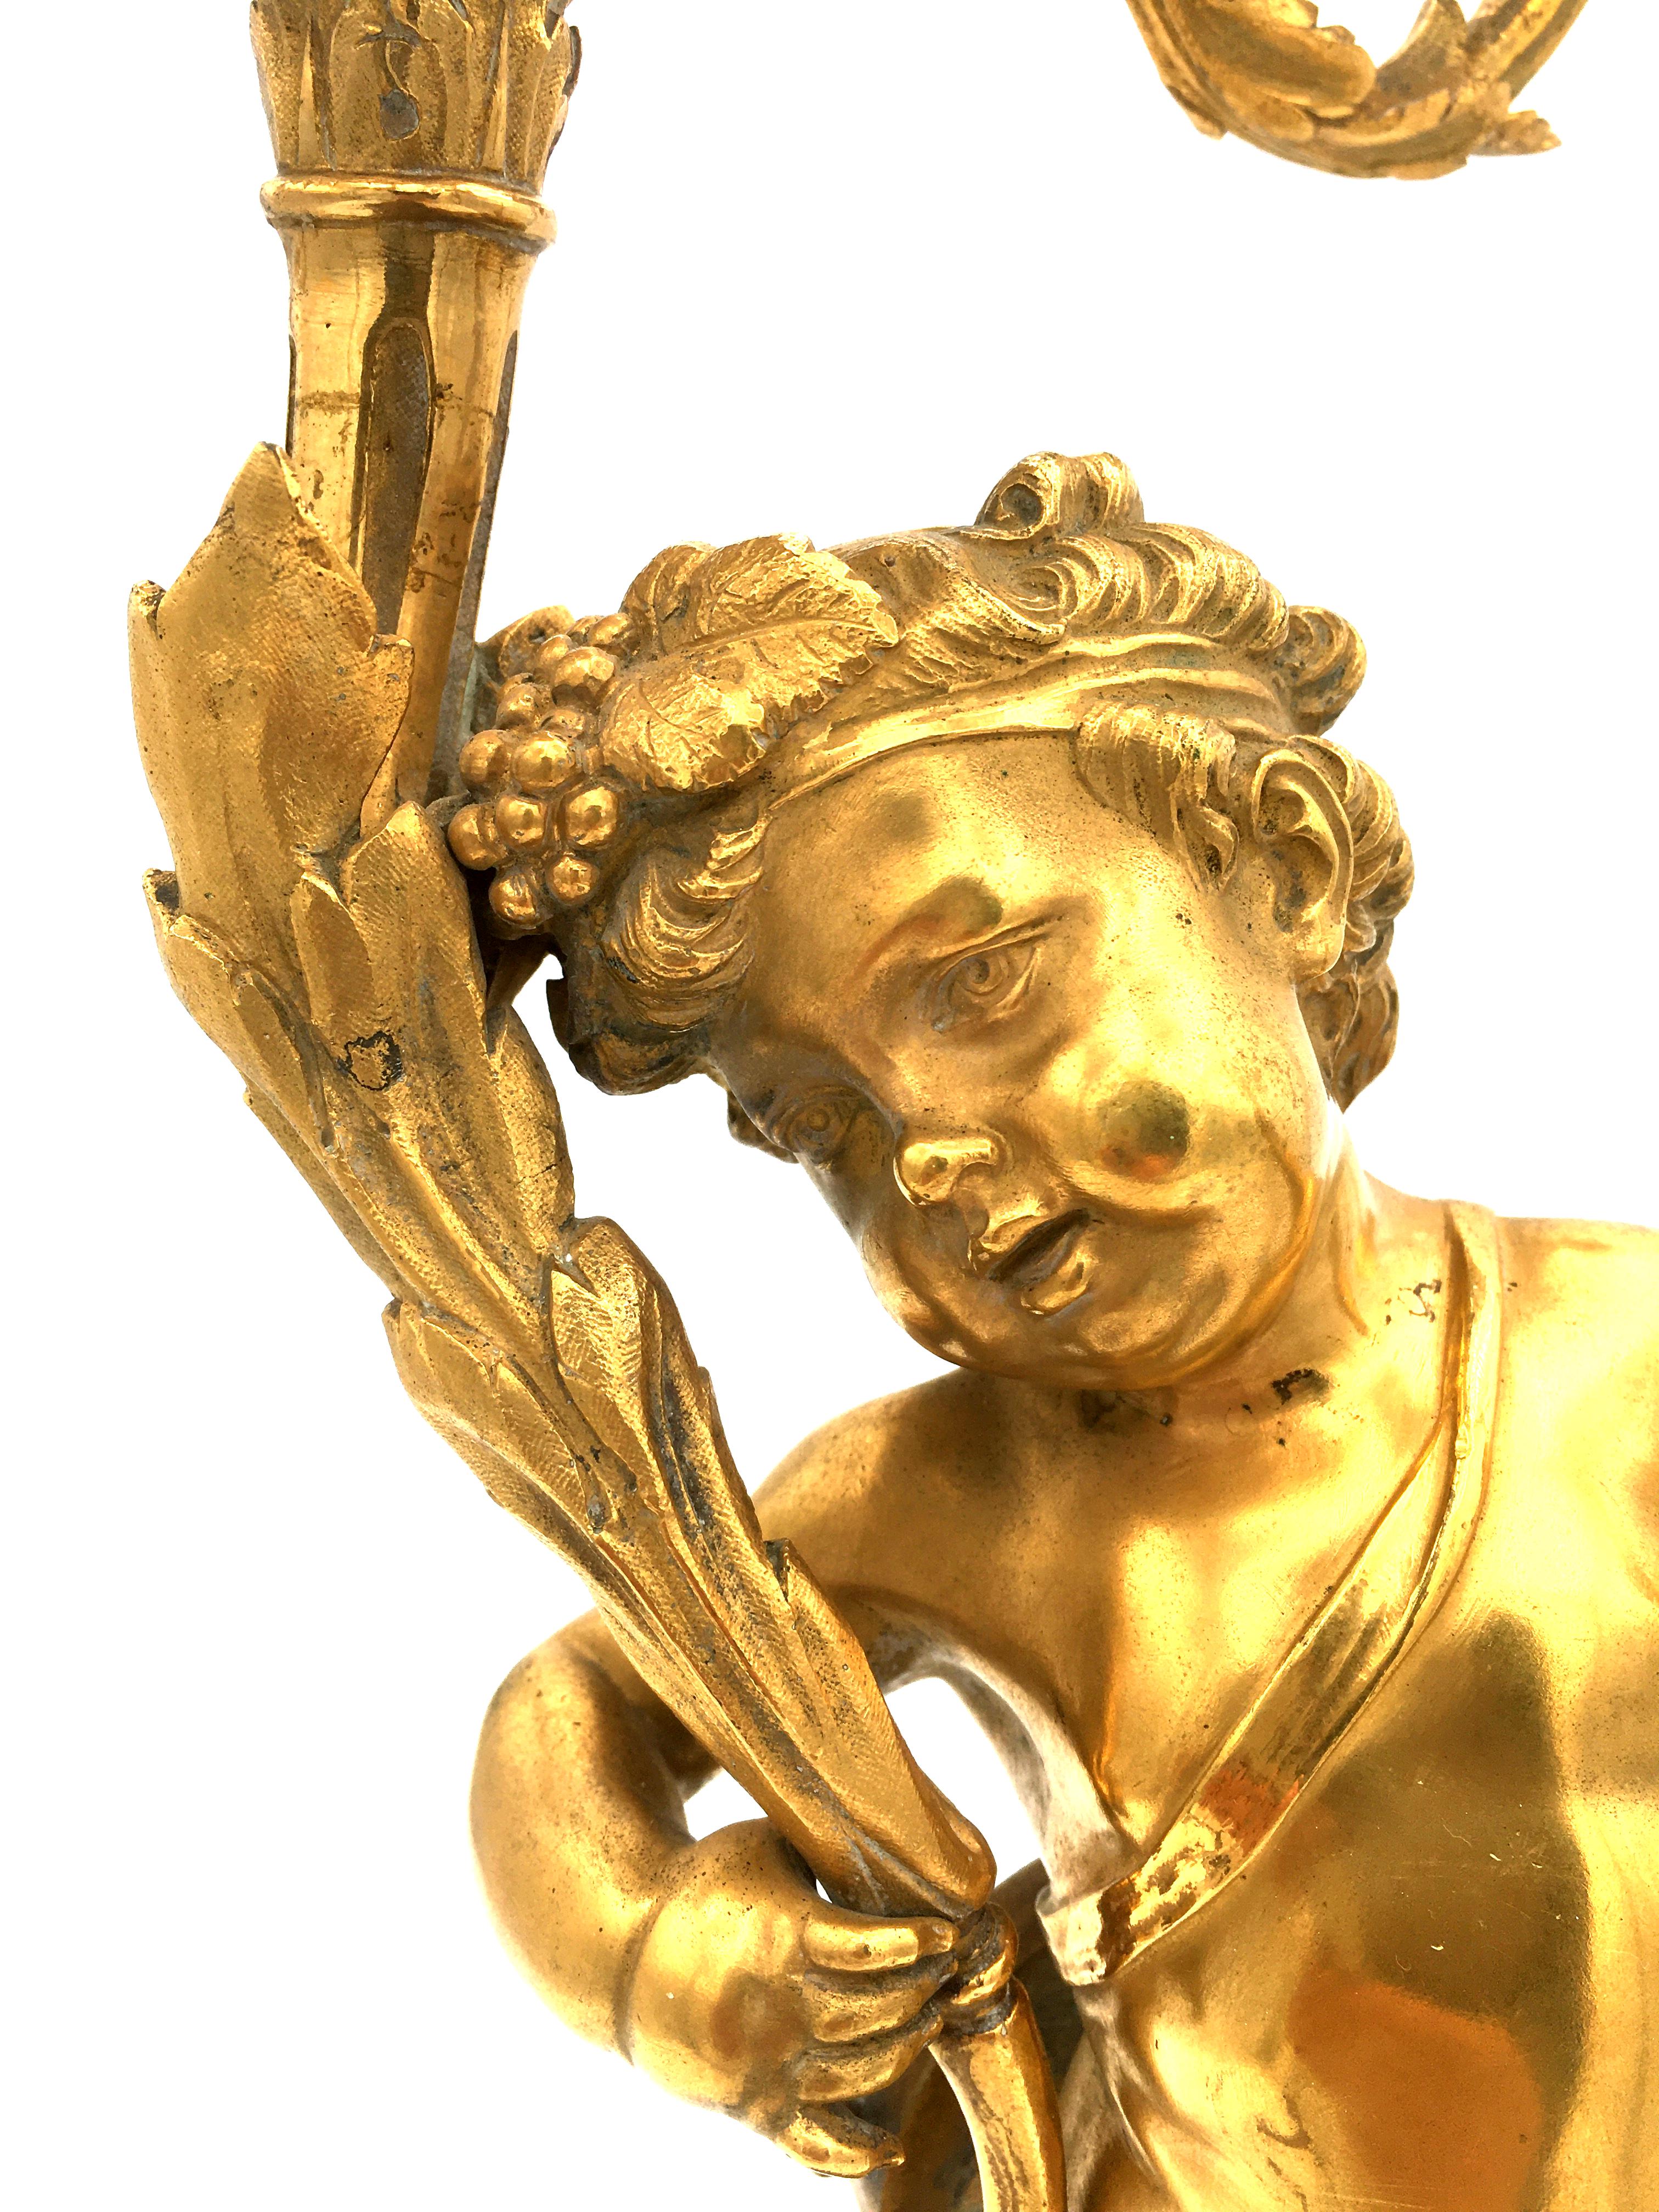 Magnifique paire de candélabres français en bronze doré de grande qualité, datant de la fin du XVIIIe siècle ou du début du XIXe siècle, reposant sur un piédestal circulaire en marbre rouge Griotte et sur des pieds dorés. Chaque candélabre est doté